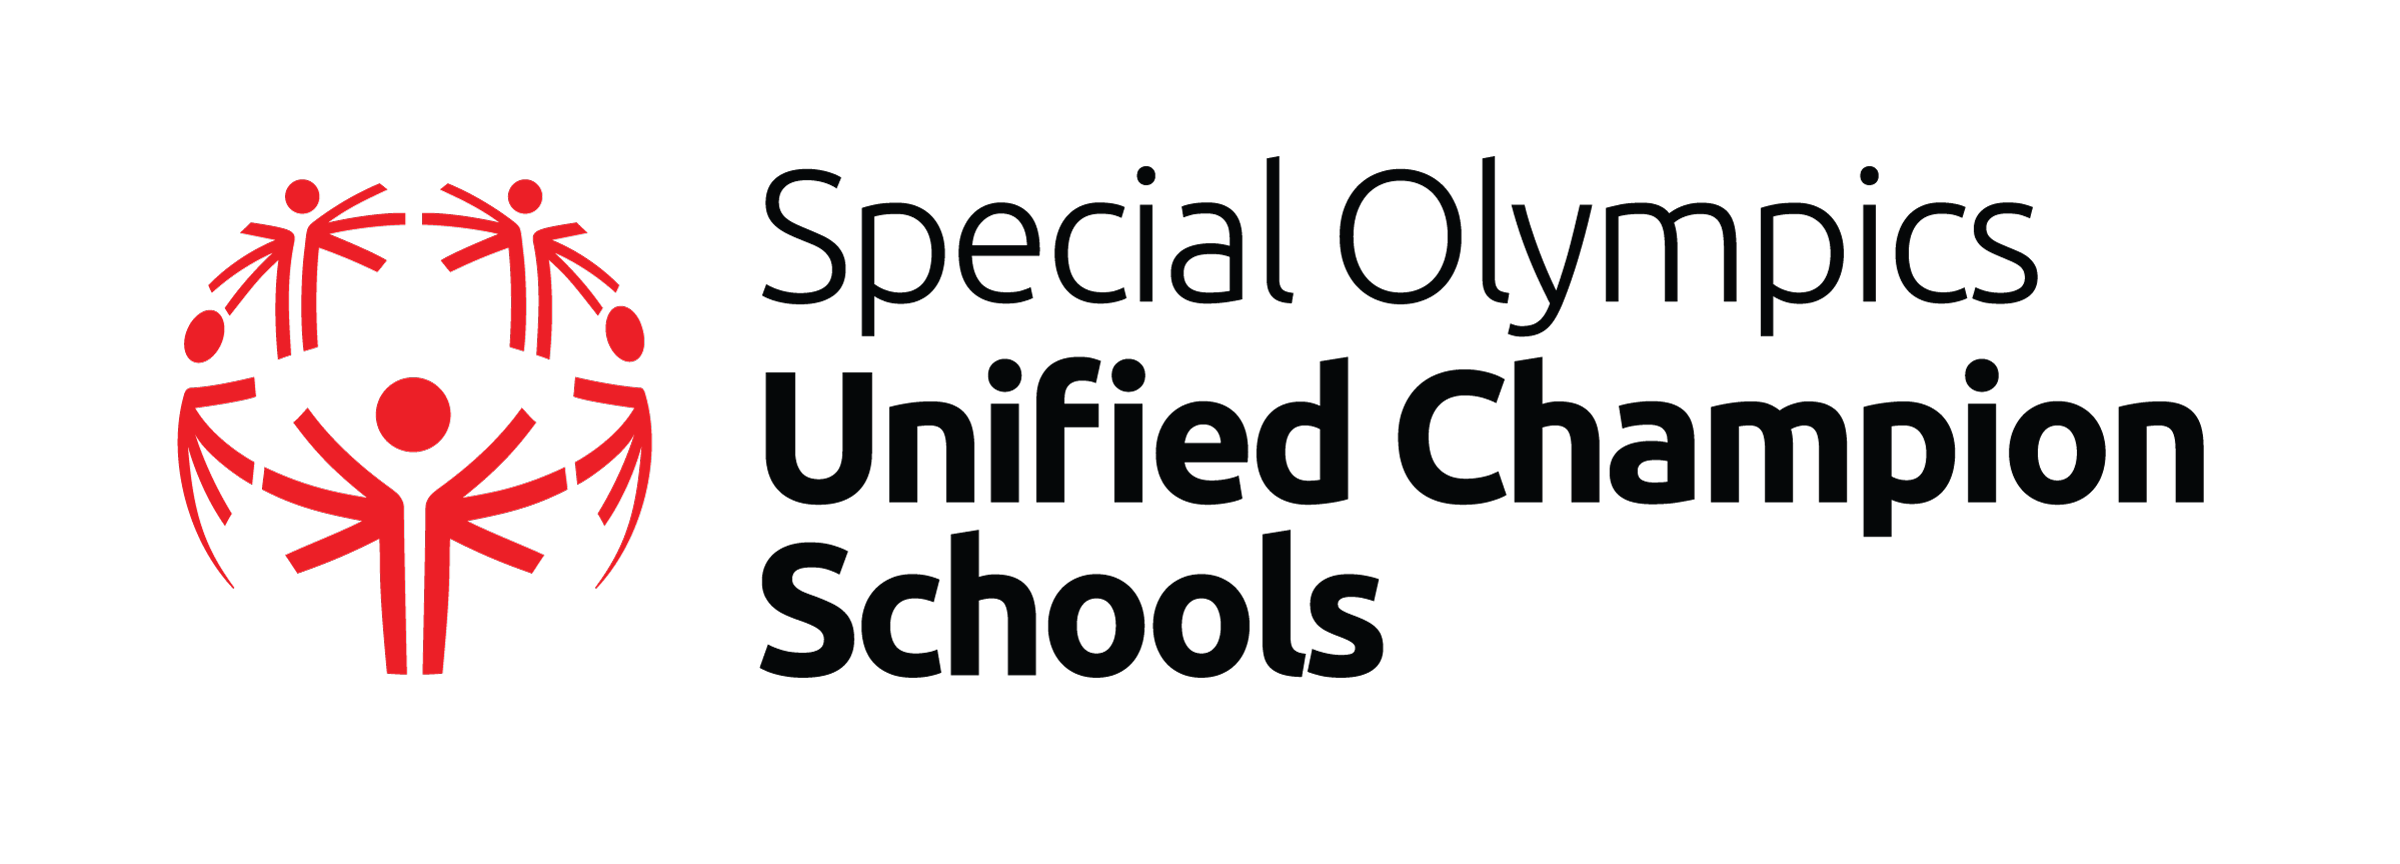 UCS Logo